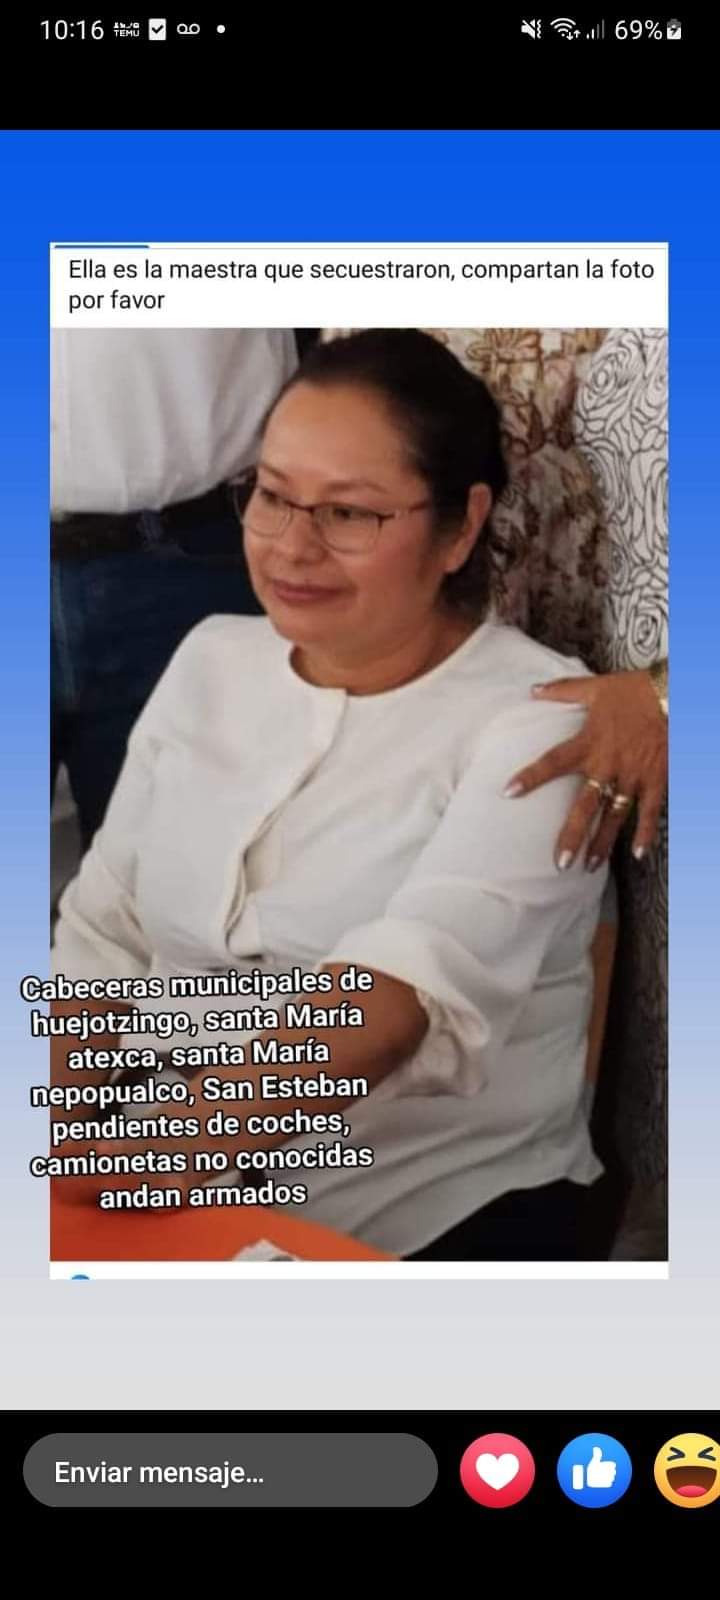 Denuncian presunto secuestro de maestra de telesecundaria en Santa María Tianguistenco, Huejotzingo